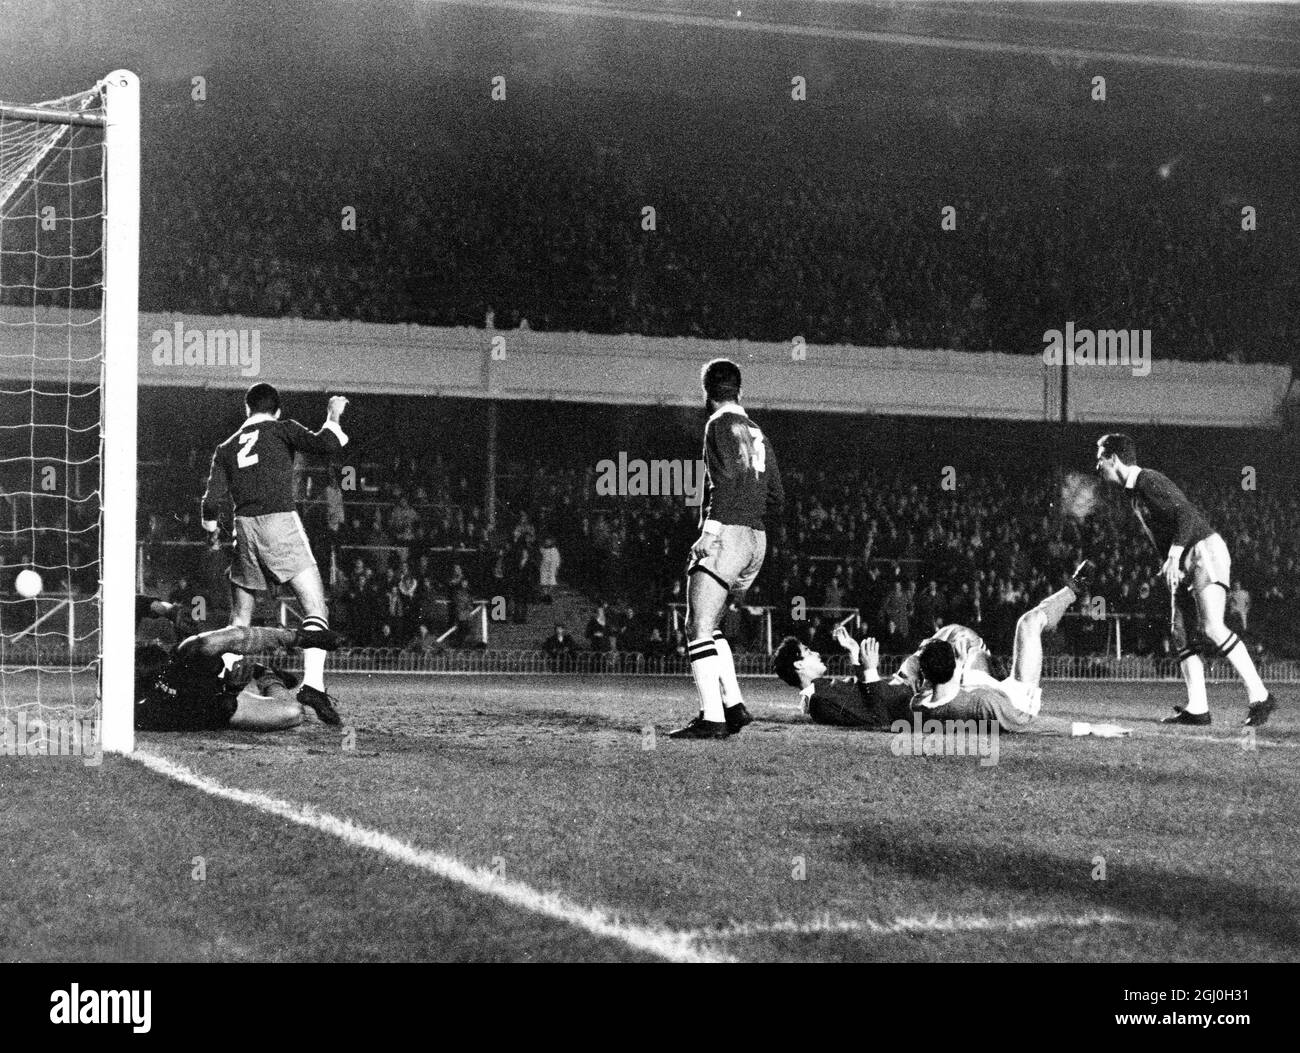 17. November 1965: Arsenal gegen die Korinther Brasiliens in Highbury. Foto zeigt: Eine Aufnahme von Arsenals Jon Sammels (am Boden, leichteres Hemd) hat das Ziel gerade verpasst. Das Spiel wurde von Arsenal mit 2:0 gewonnen. Stockfoto